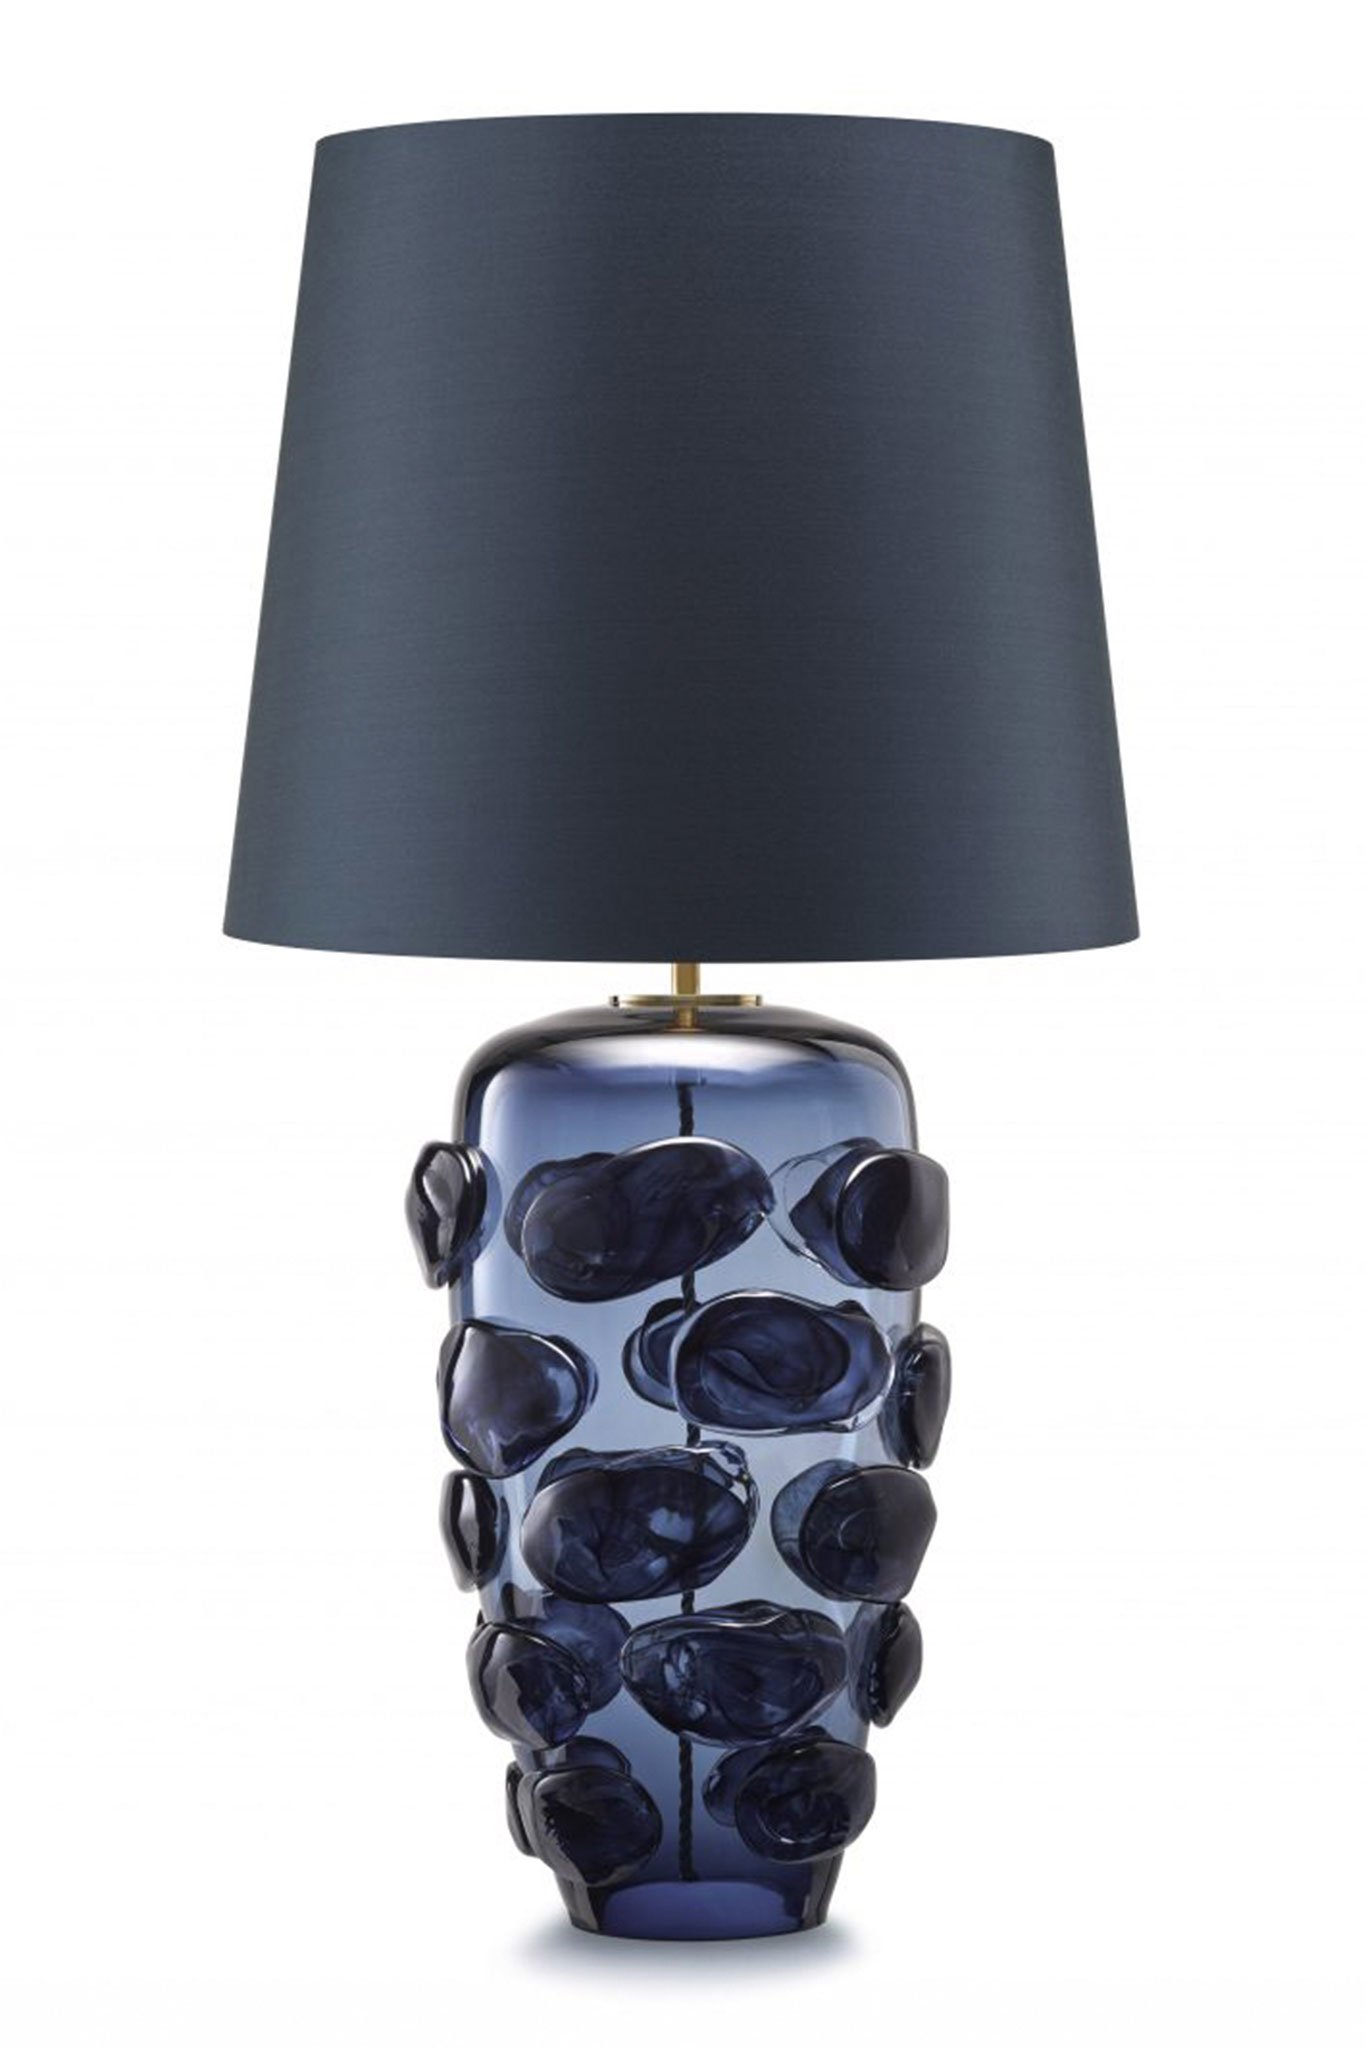 Als wahres Schmuckstück der Lichtgestaltung thront die tintenblaue Blob Lamp »Tuxedo« am besten auf Sideboards und in Eingangs-bereichen. portaromana.com